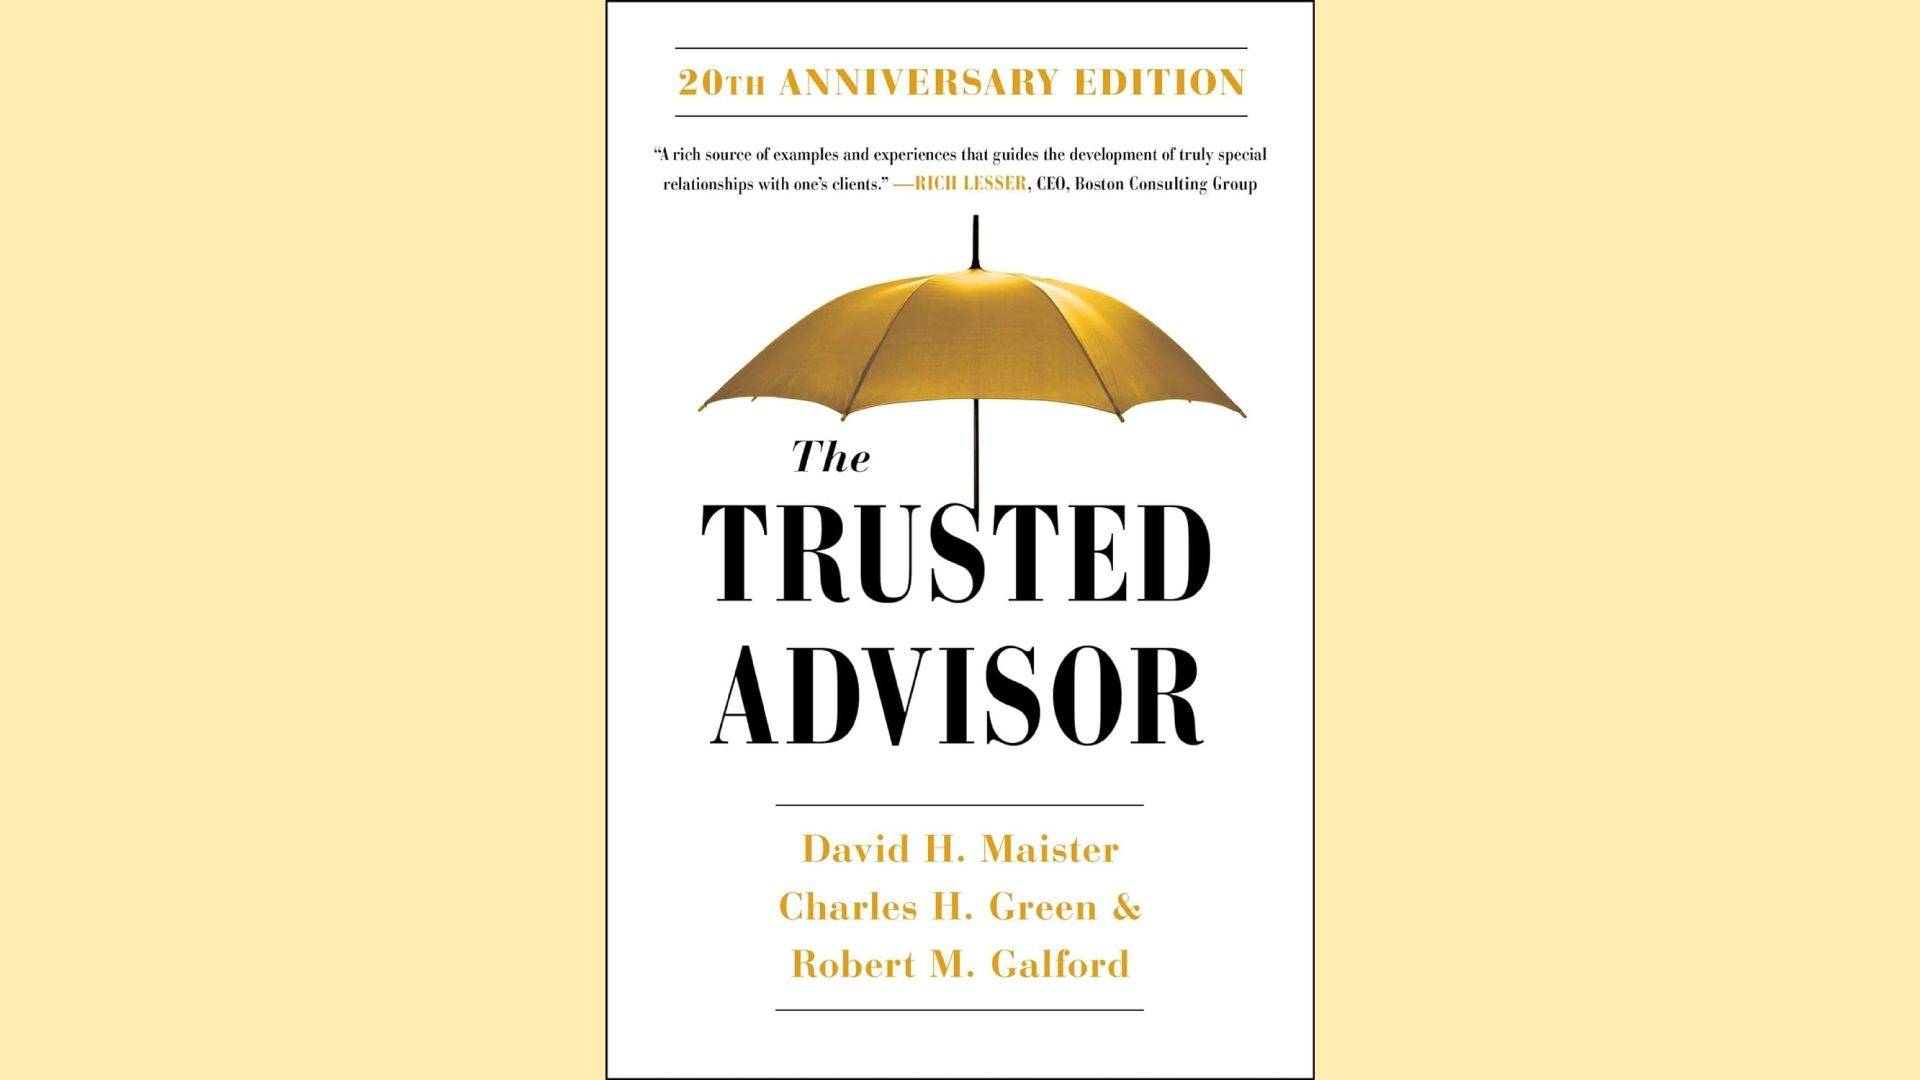 Summary: The Trusted Advisor by David Maister